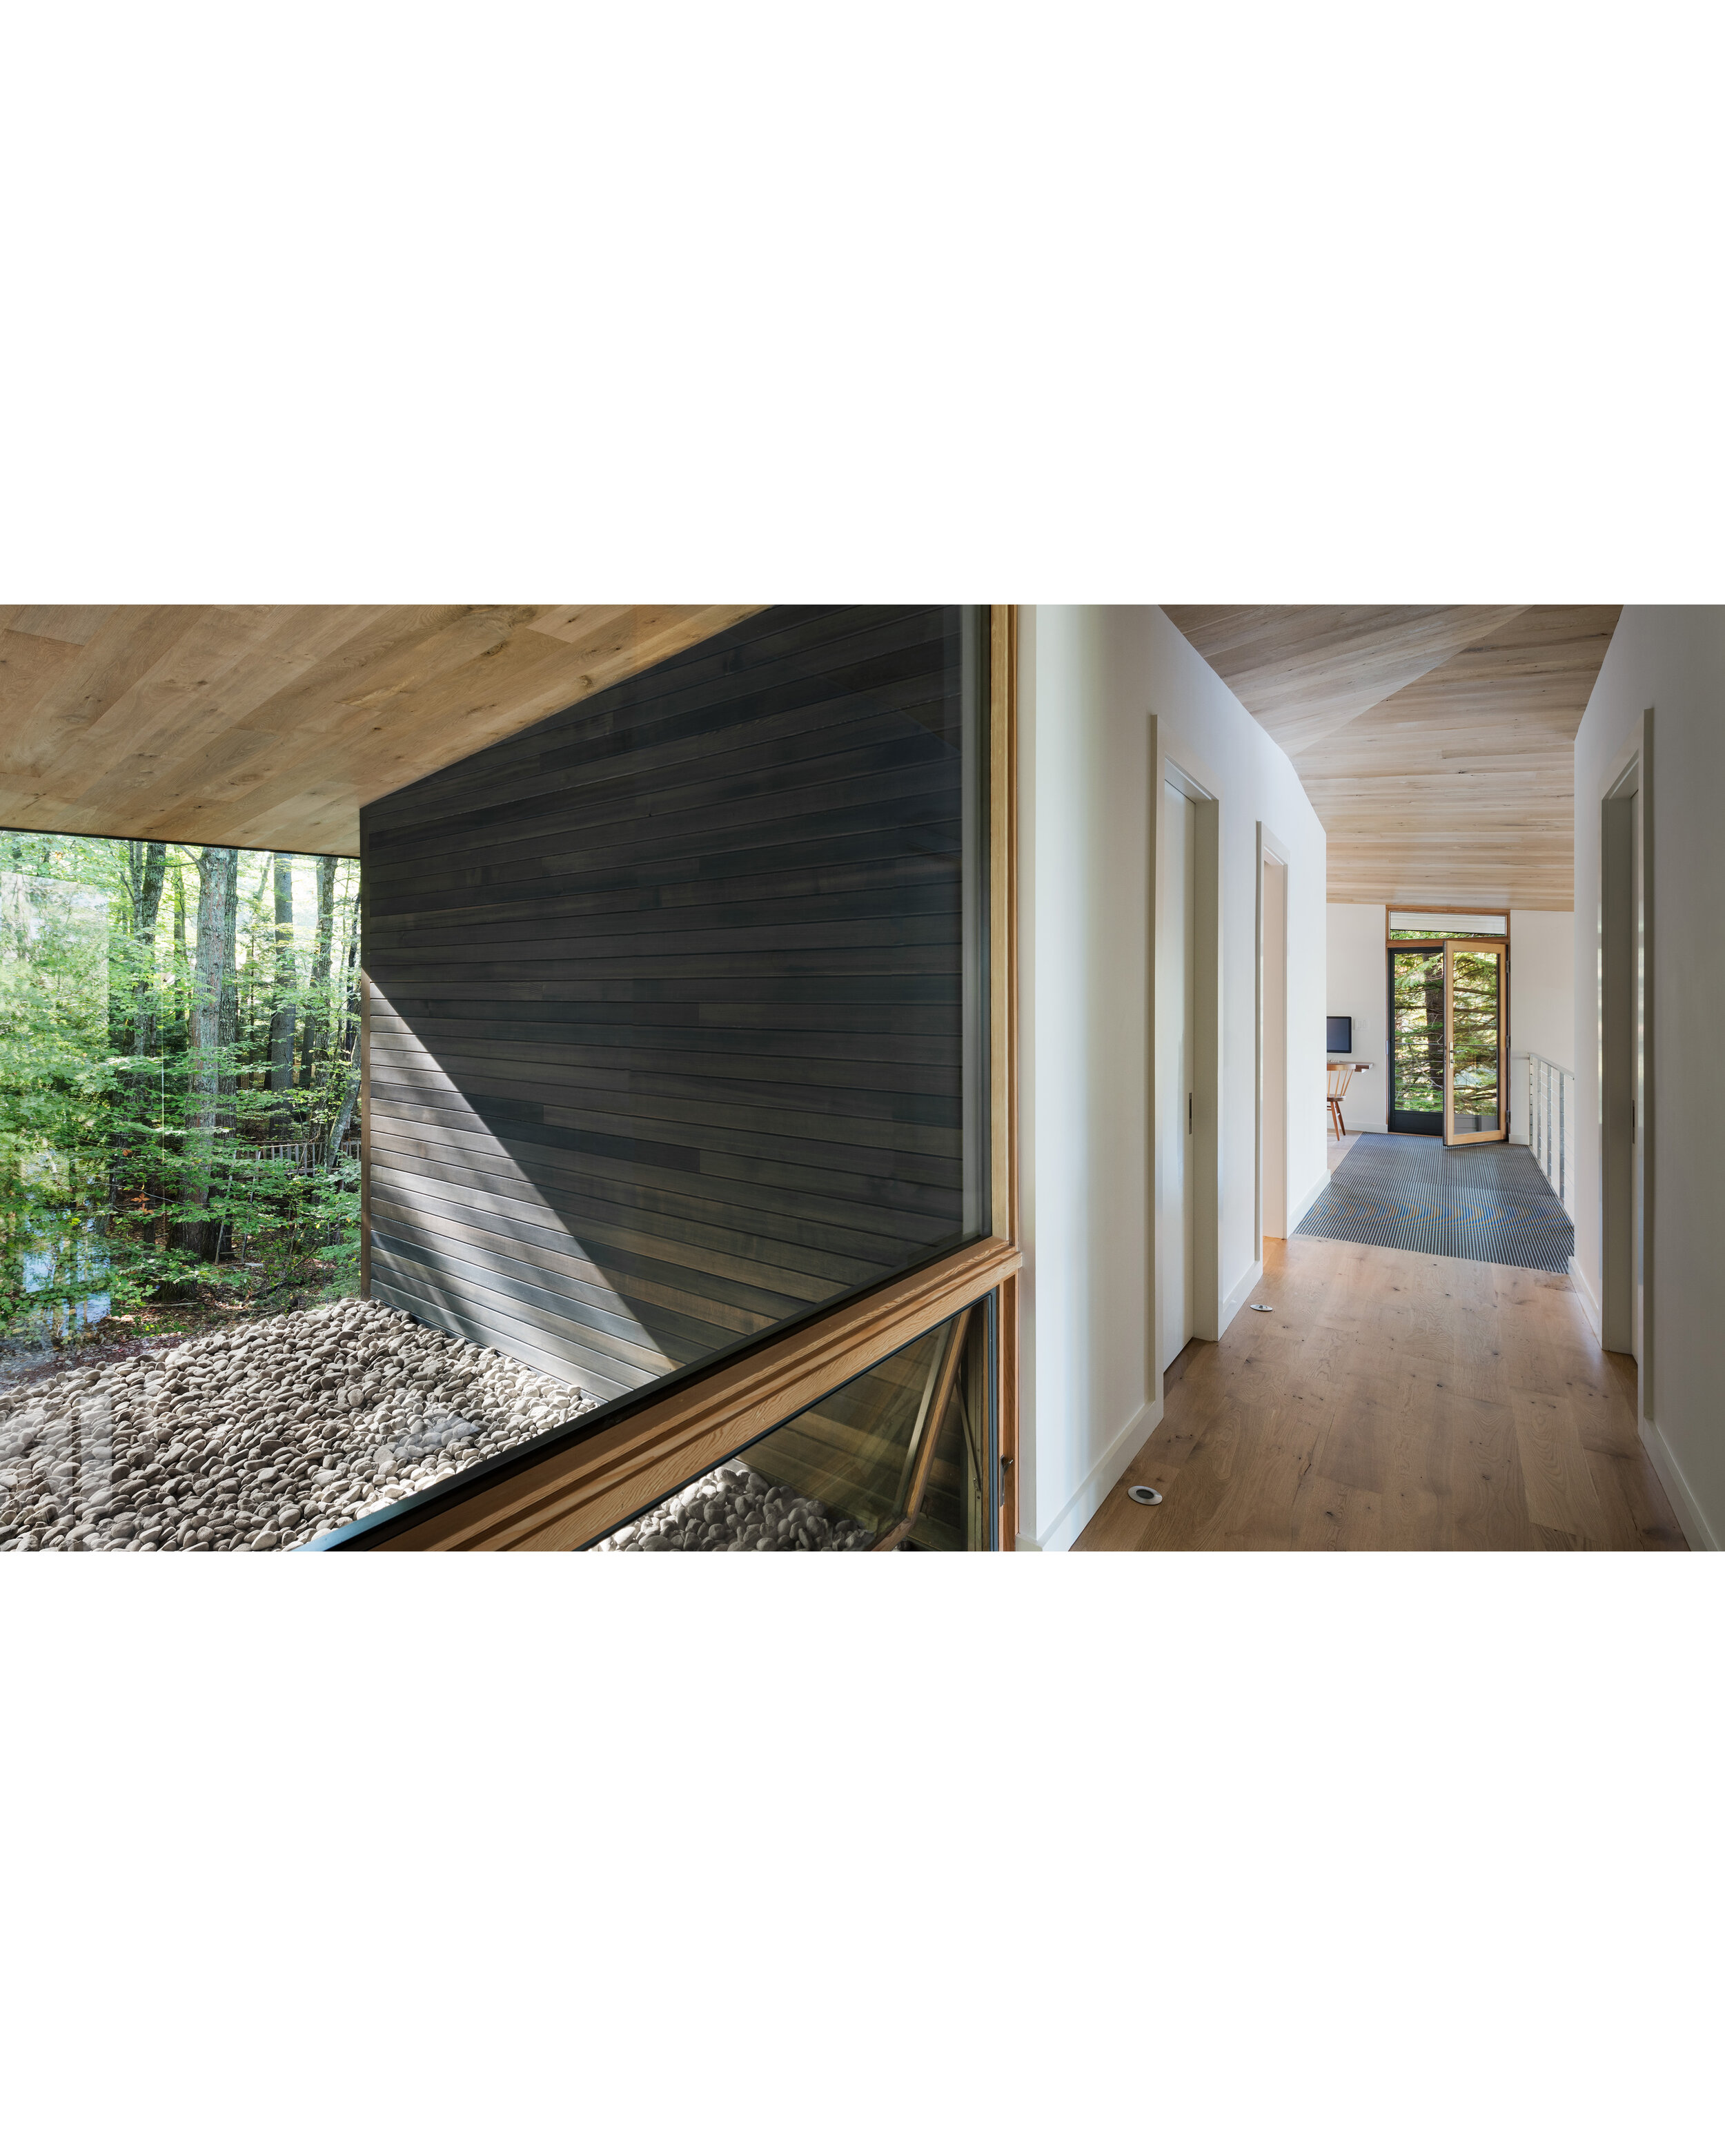 Squam Lake- New Hampshire- Architecture-Modern Cabin | MURDOUGH DESIGN